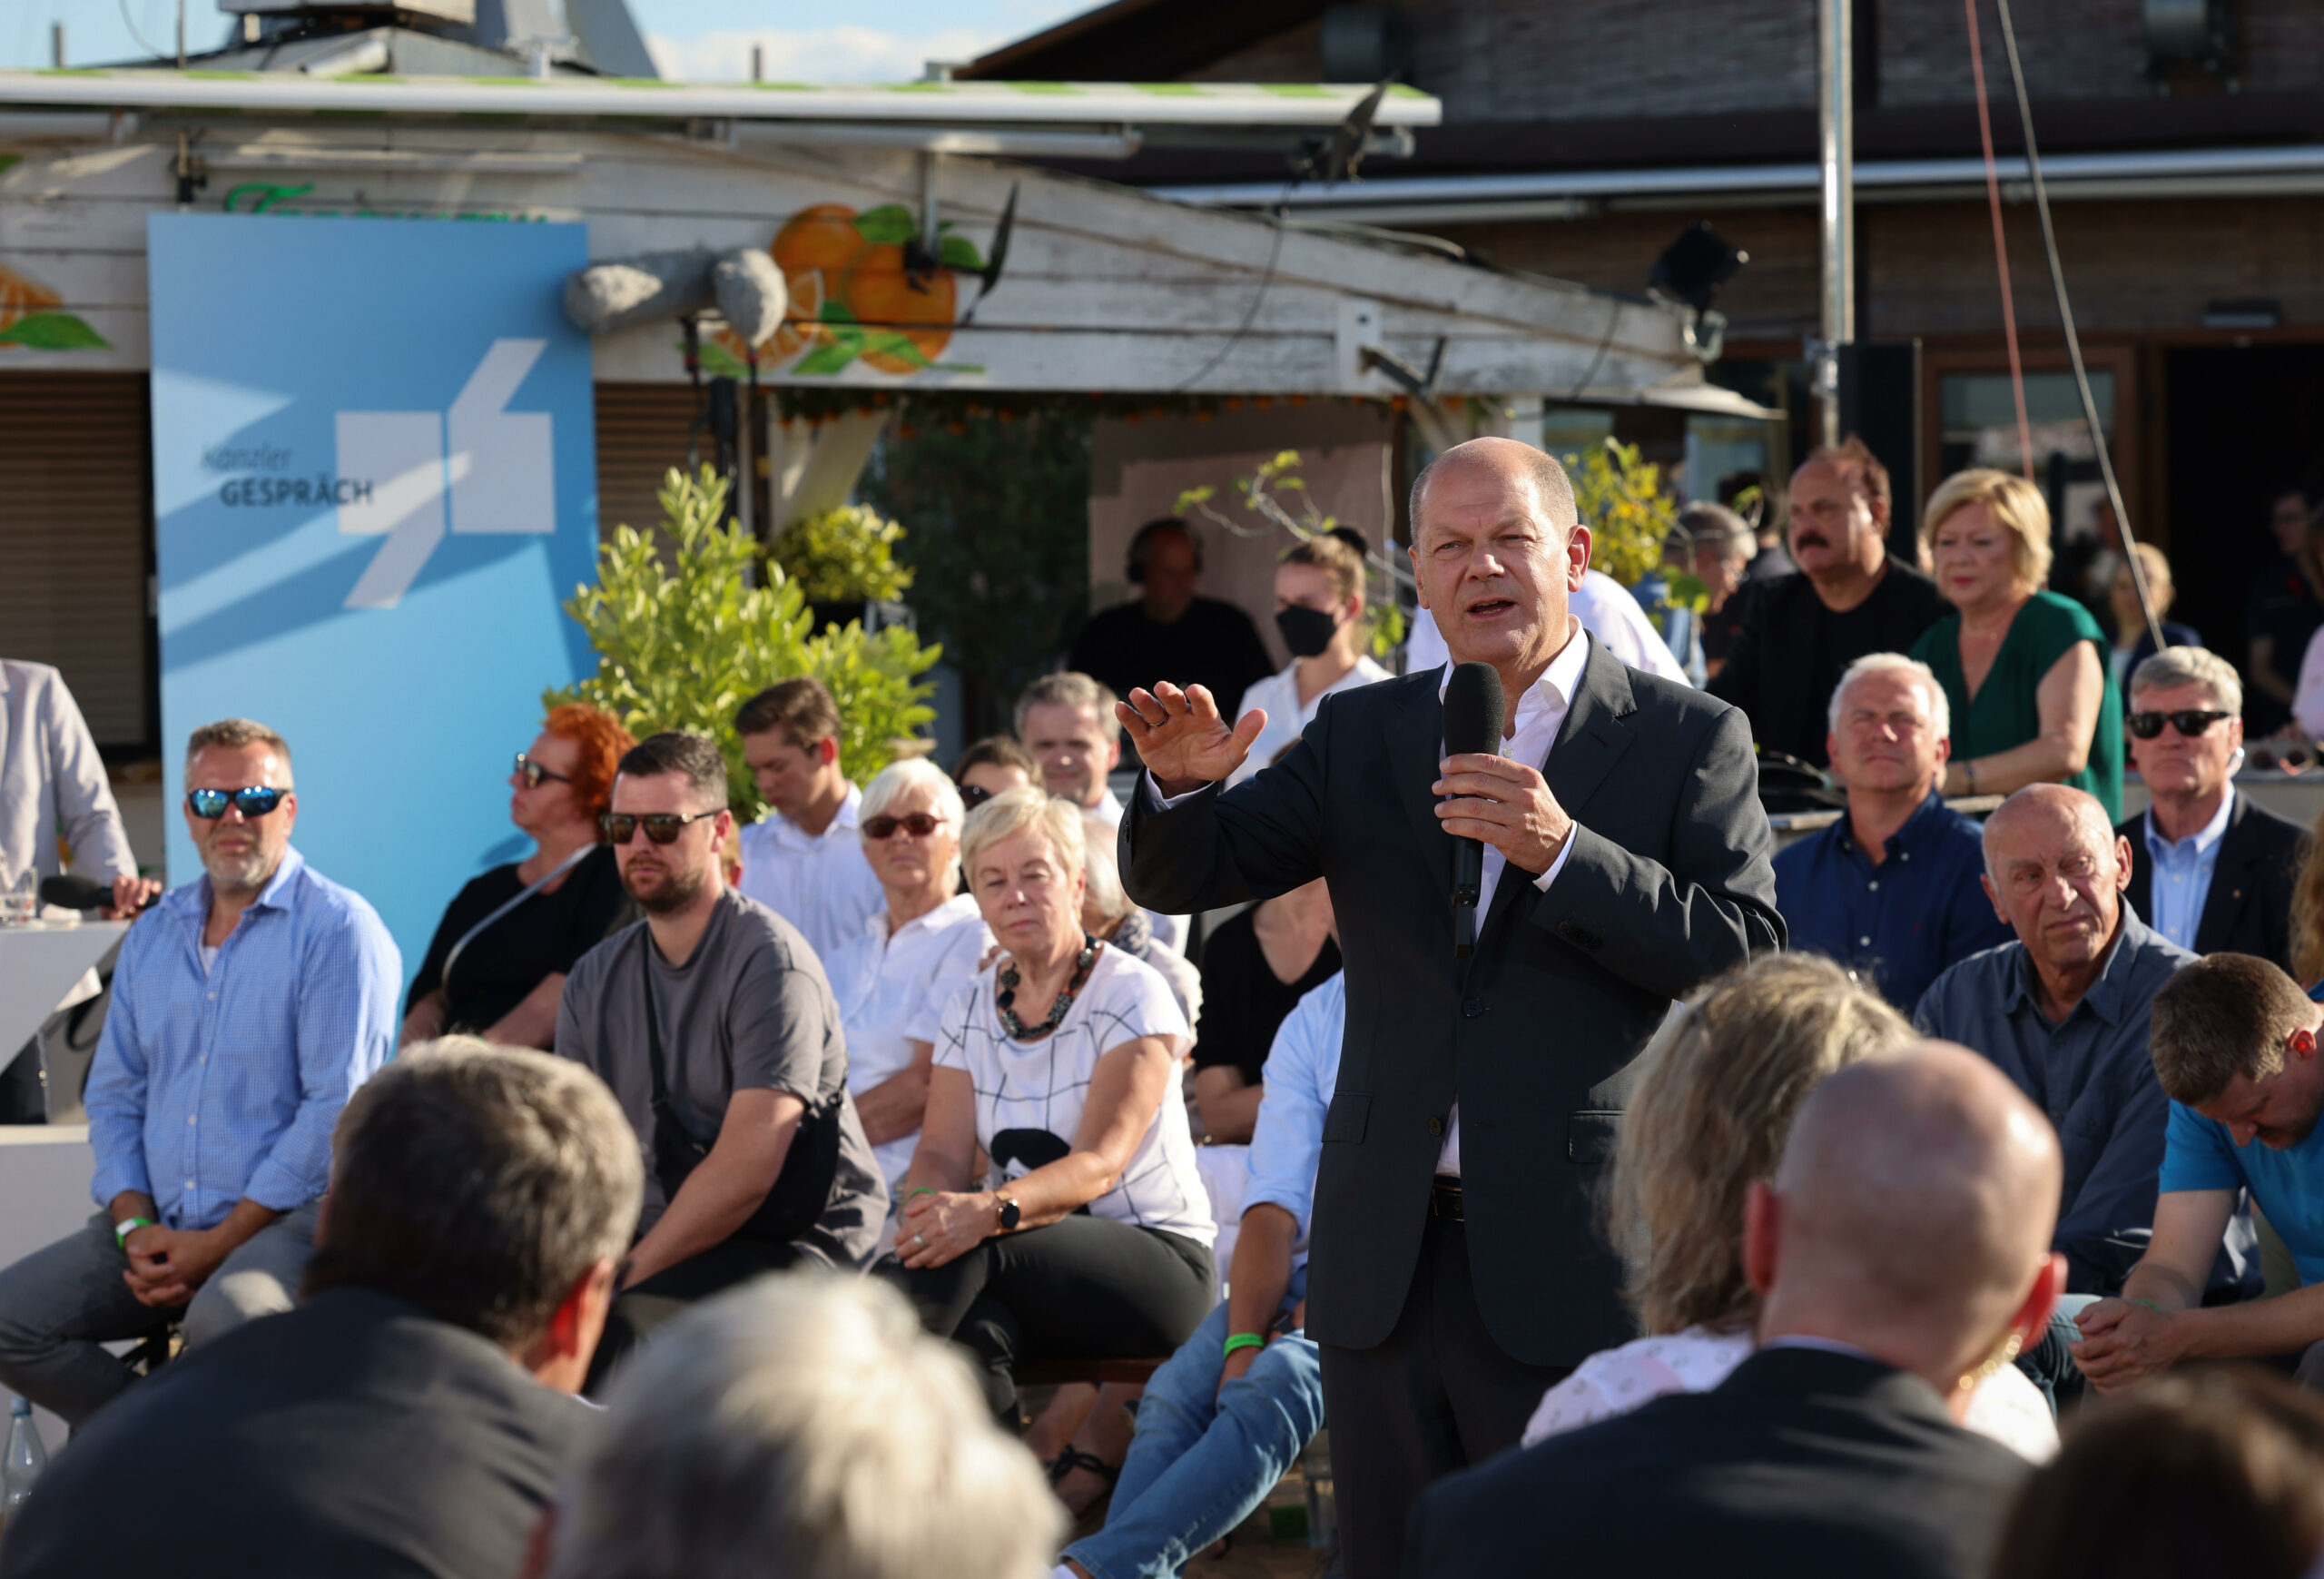 Bundeskanzler Olaf Scholz (SPD) sprach am Montagabend bei einem Bürgerdialog im Strandsalon an der Trave.